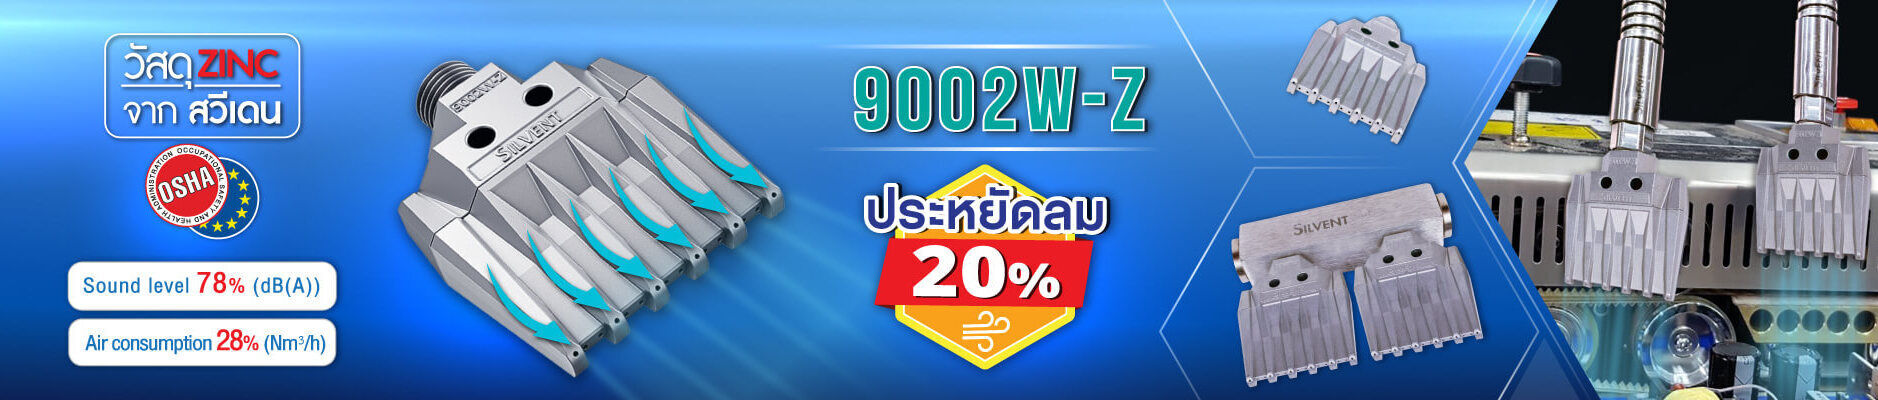 หัวเป่าลมหน้ากว้างรุ่นใหม่ล่าสุด 9002W-Z New model flat air nozzle